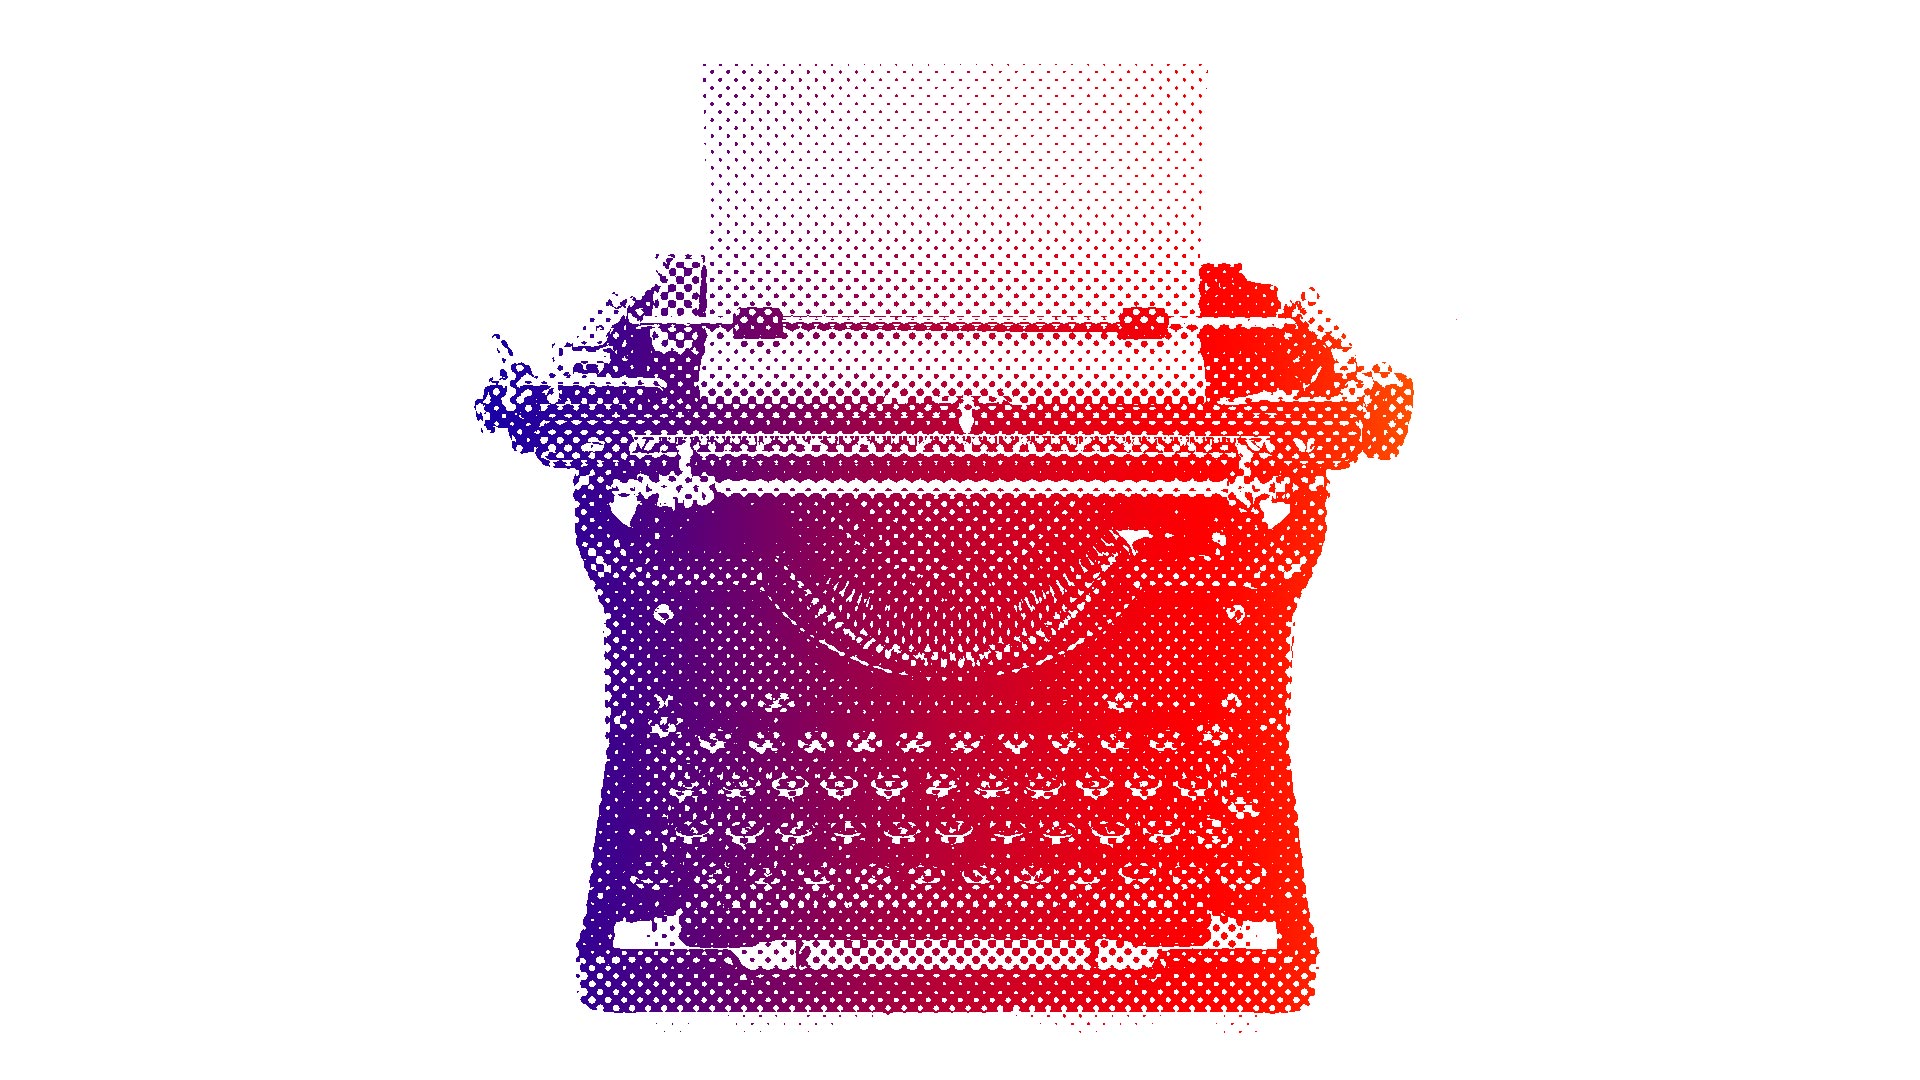 Image of a Manual Typewriter